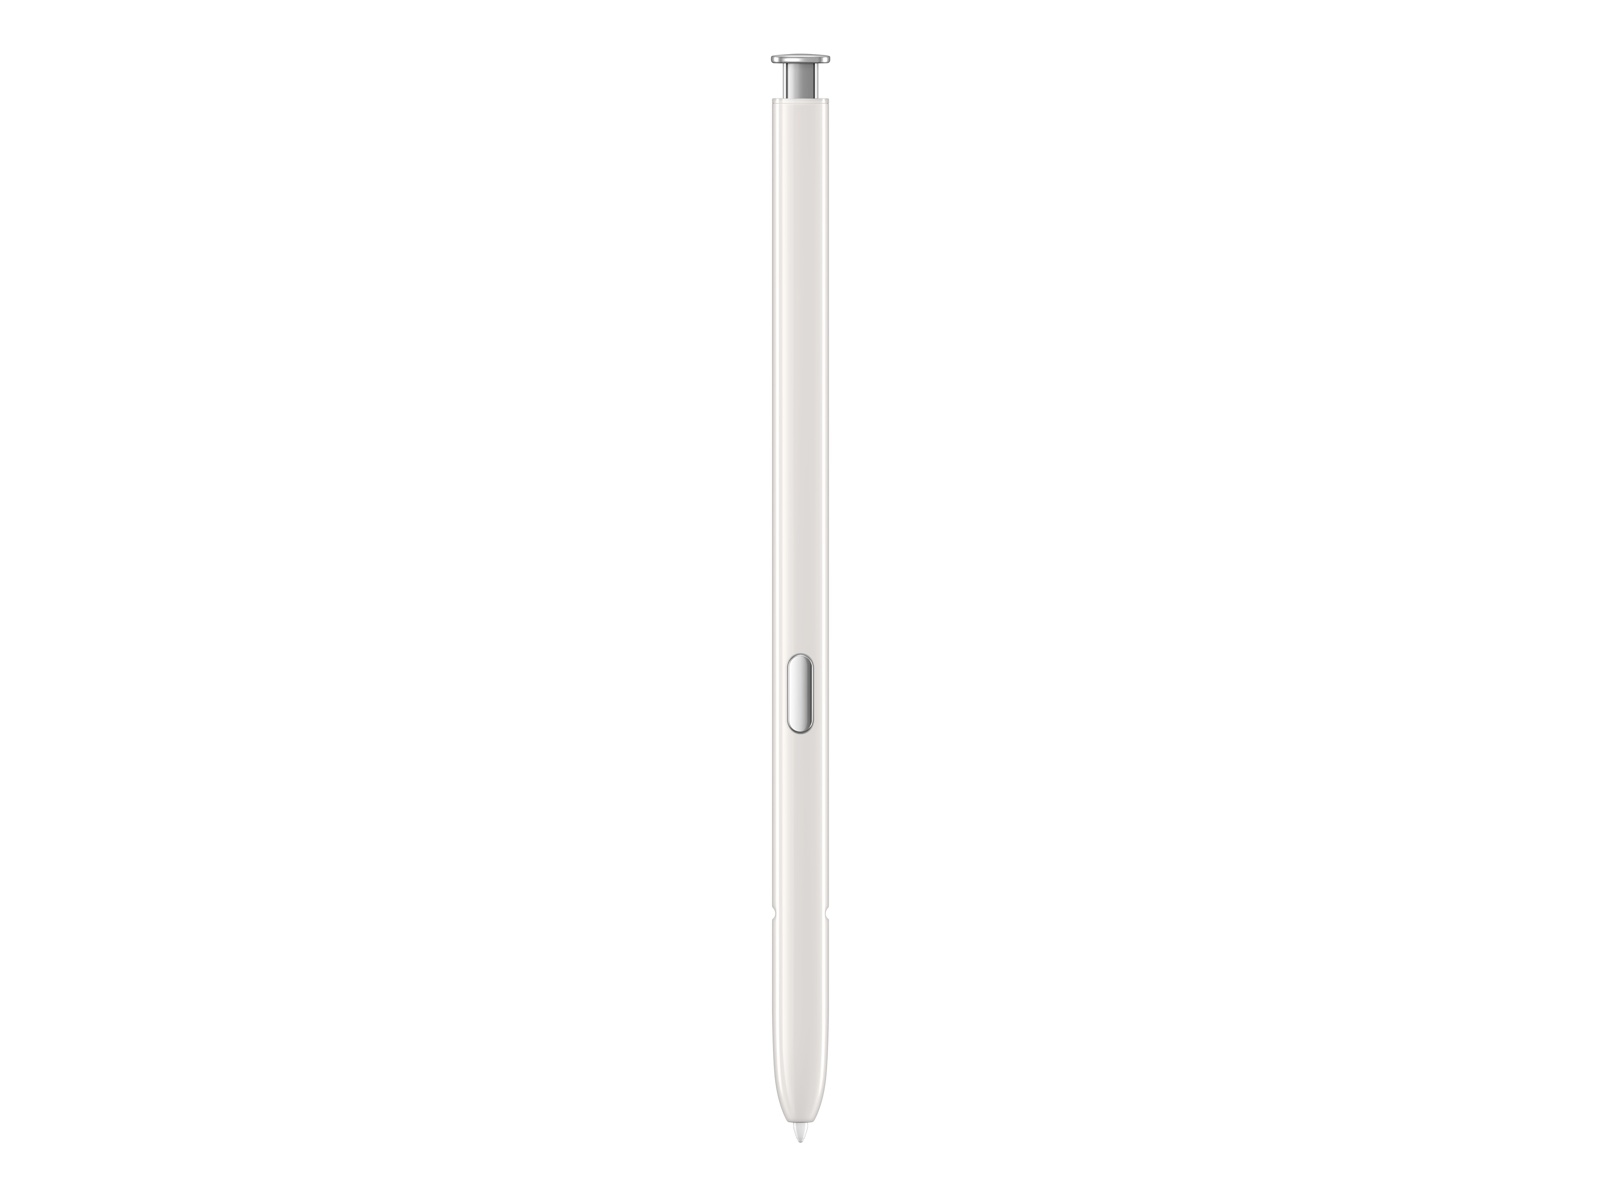 Galaxy Note10, Note10+ Stylus S Pen in Silver